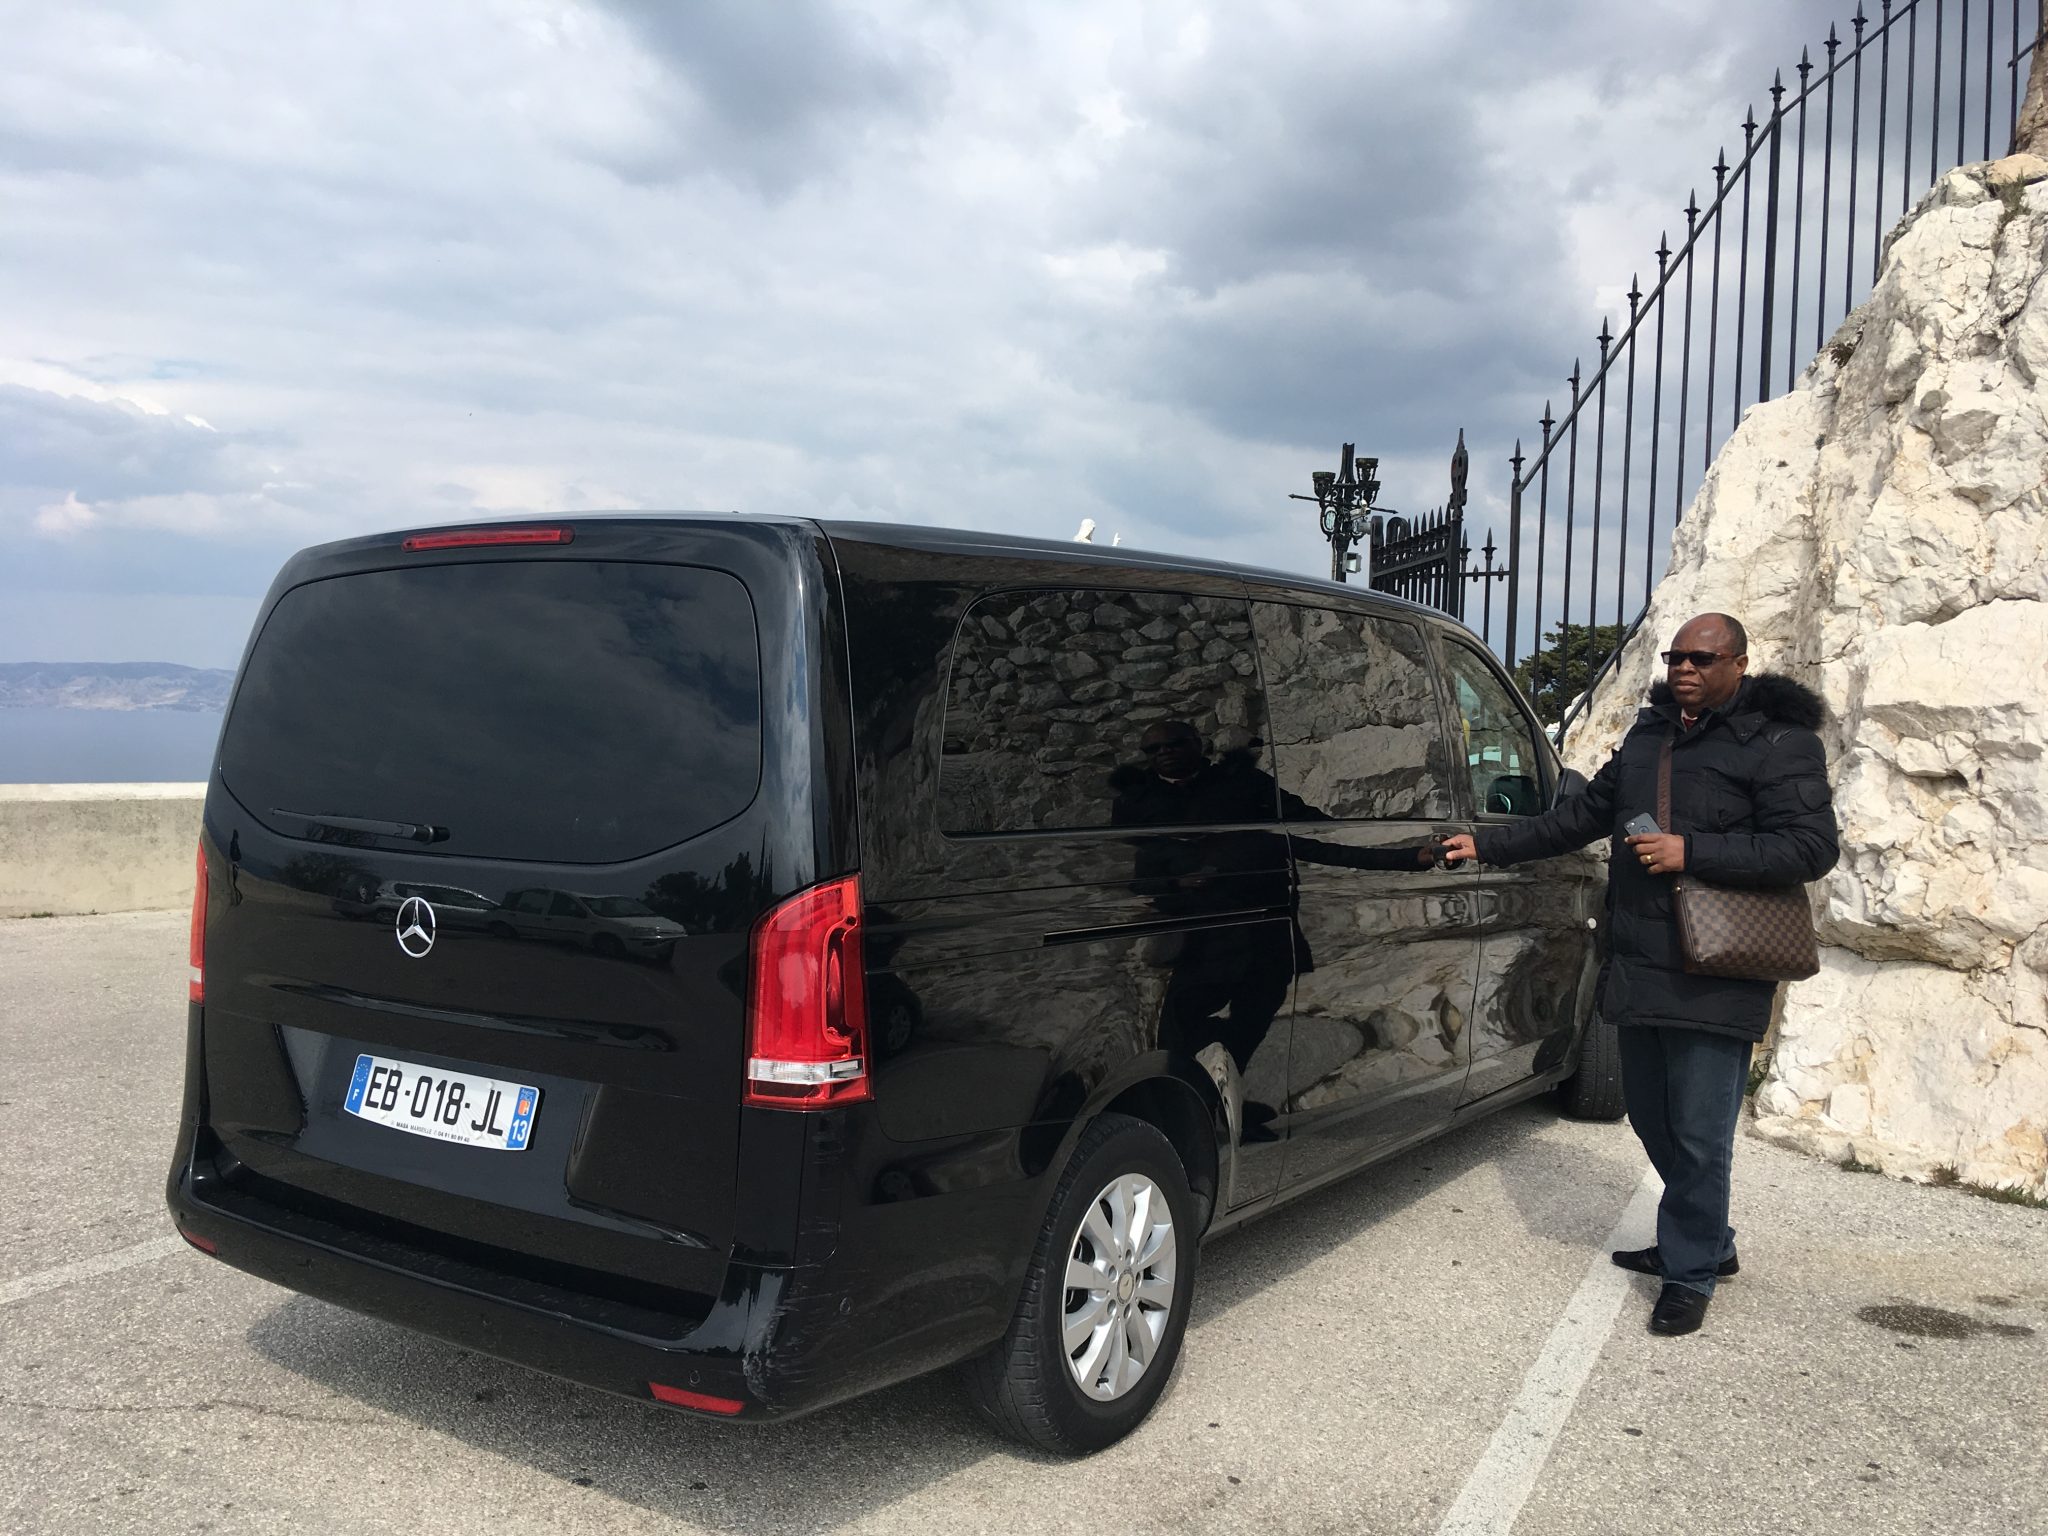 Excursion à Marseille van 9 places MERCEDES avec chauffeur Privé à NOTRE DAME DE LA GARDE